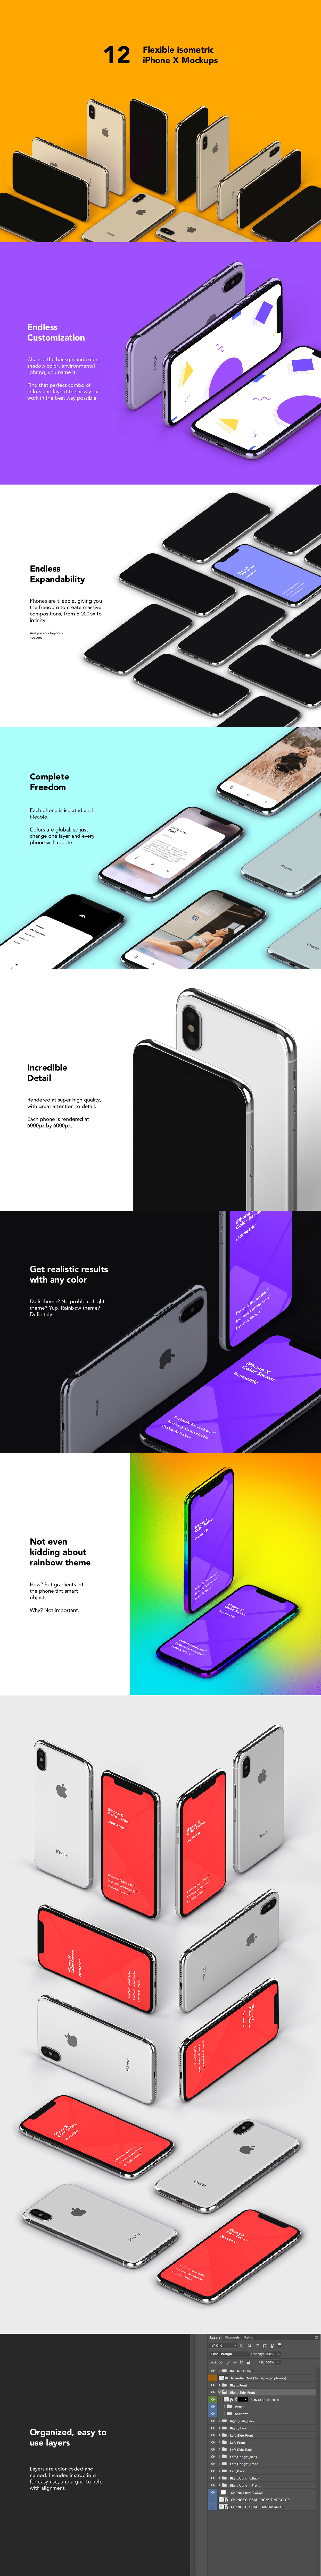 素材库下午茶：质感超强的多角度iPhone X APP UI设计展示模型Mockups下载[PSD]插图